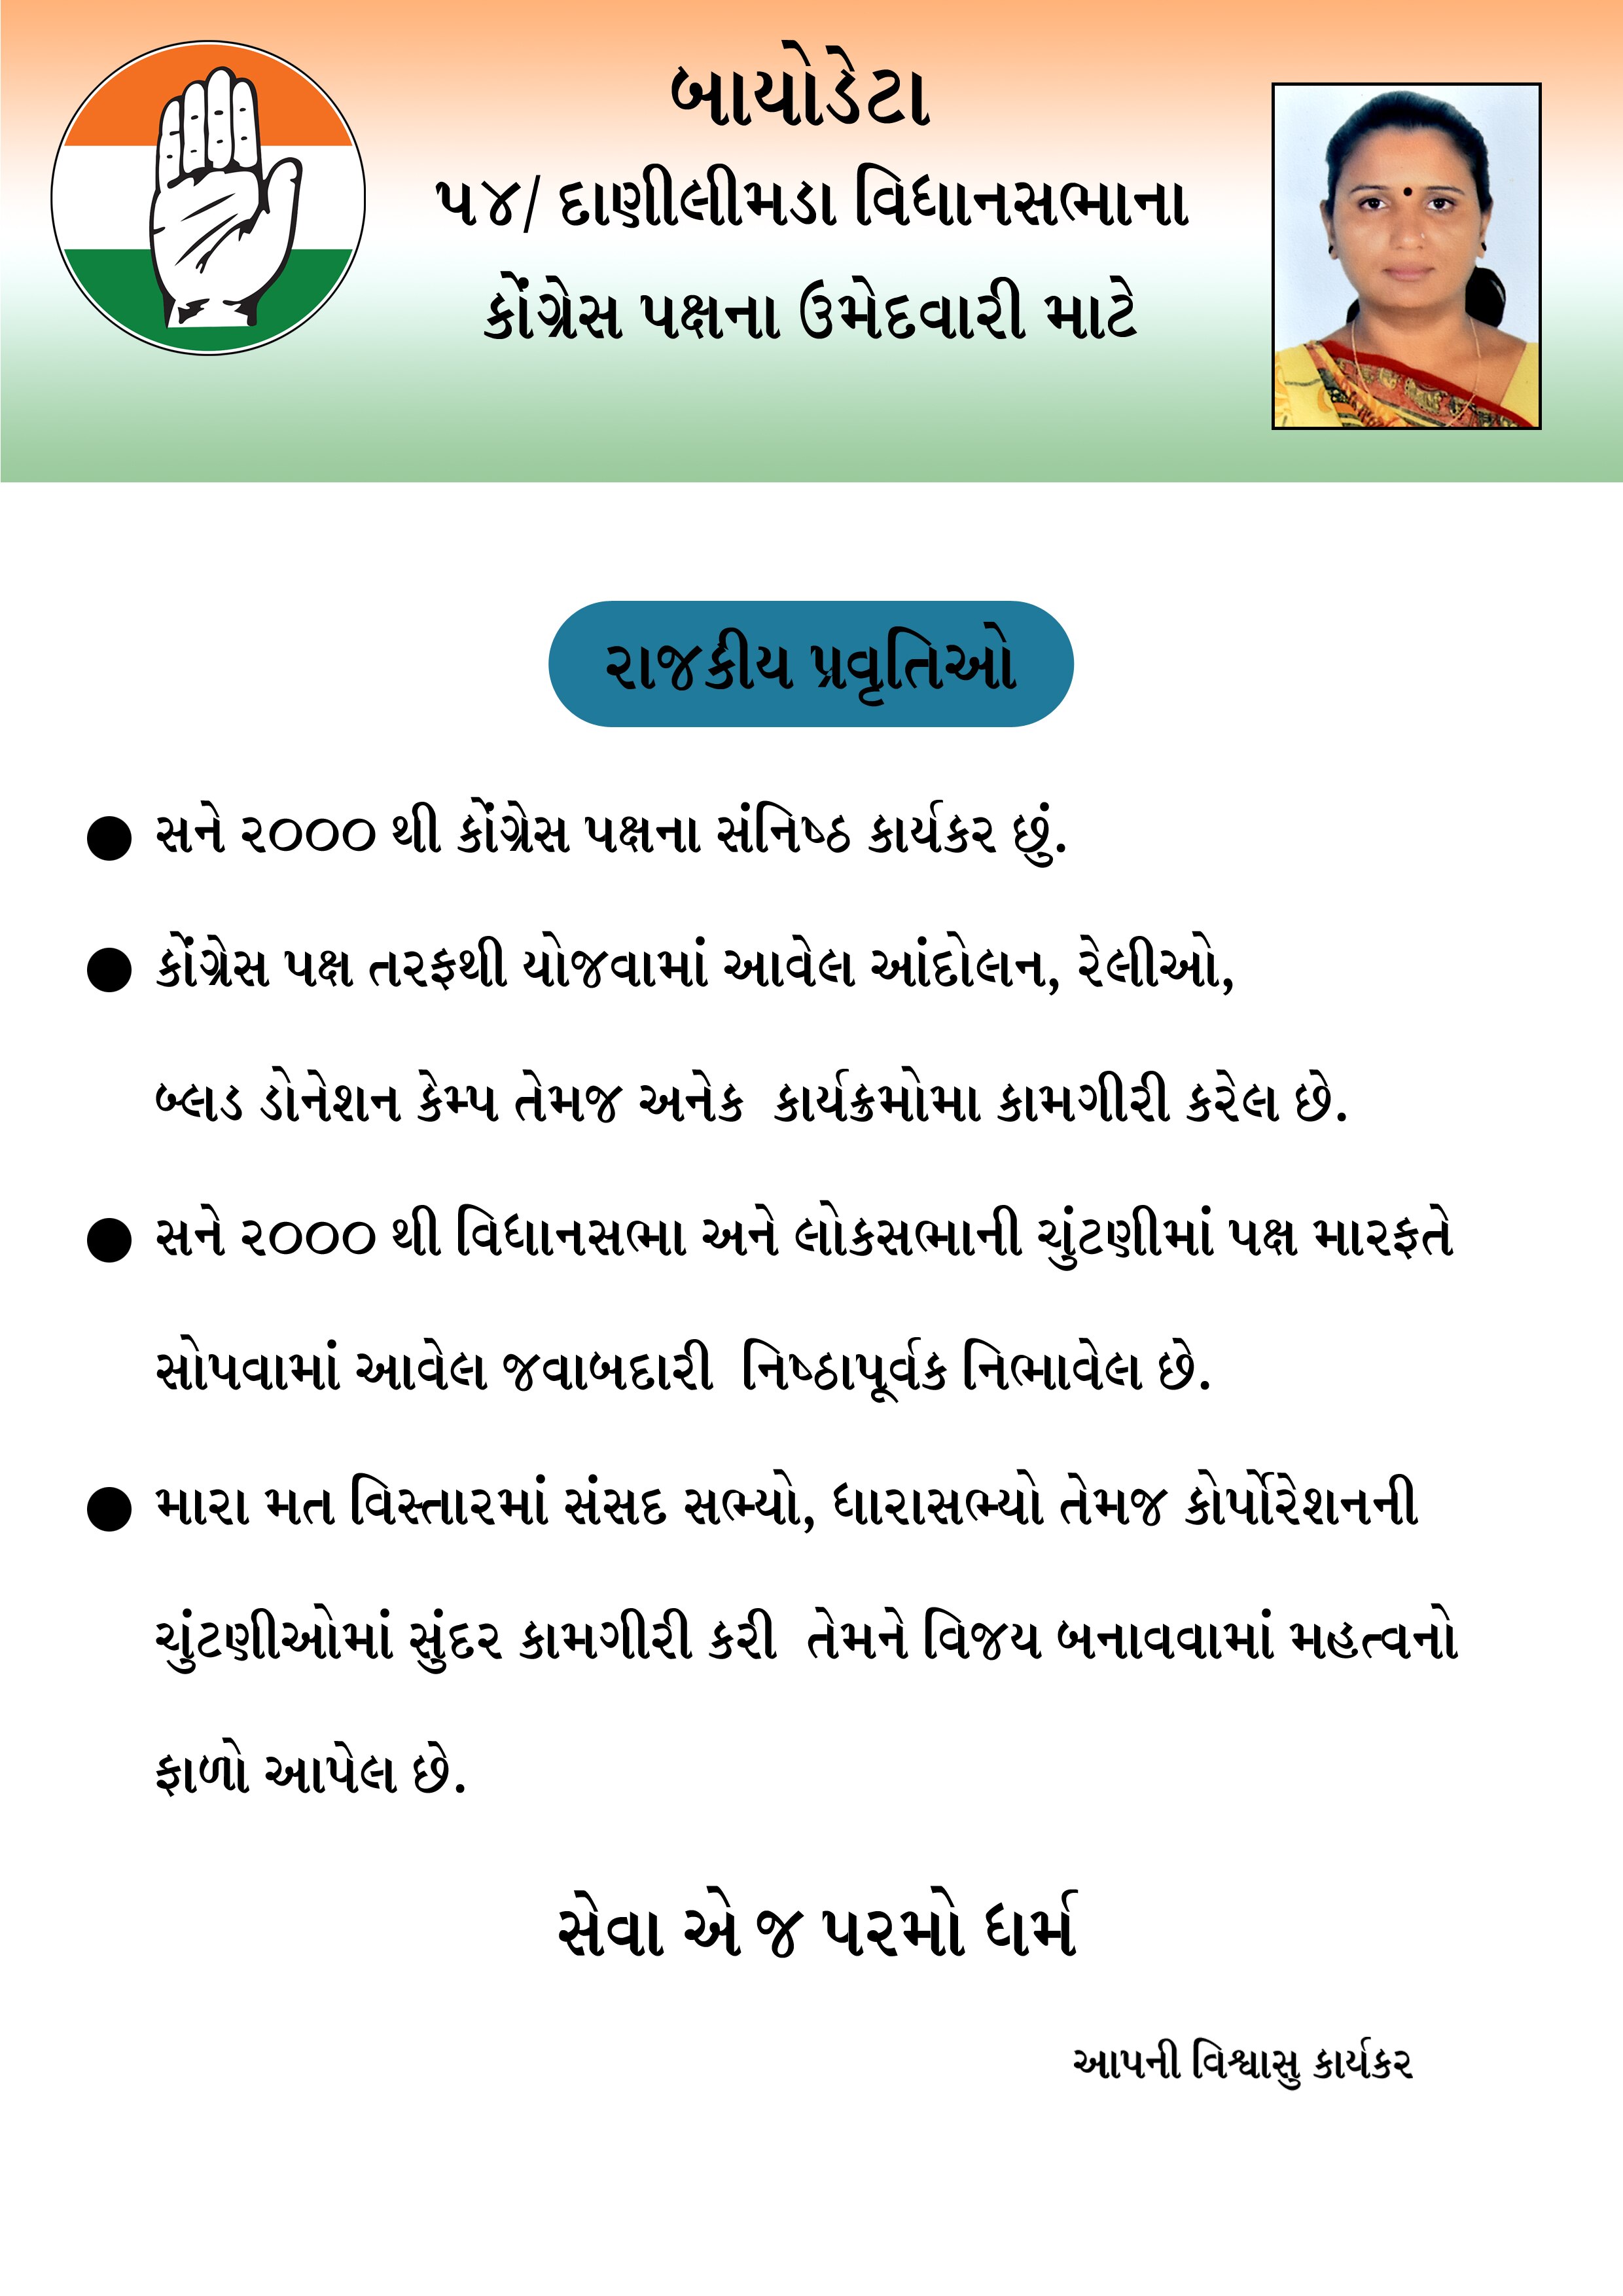 Gujarat Assembly Elections: ગુજરાત વિધાનસભા ચૂંટણીમાં આ બેઠક પર કોંગ્રેસમાં કકળાટ થવાની સંભાવના